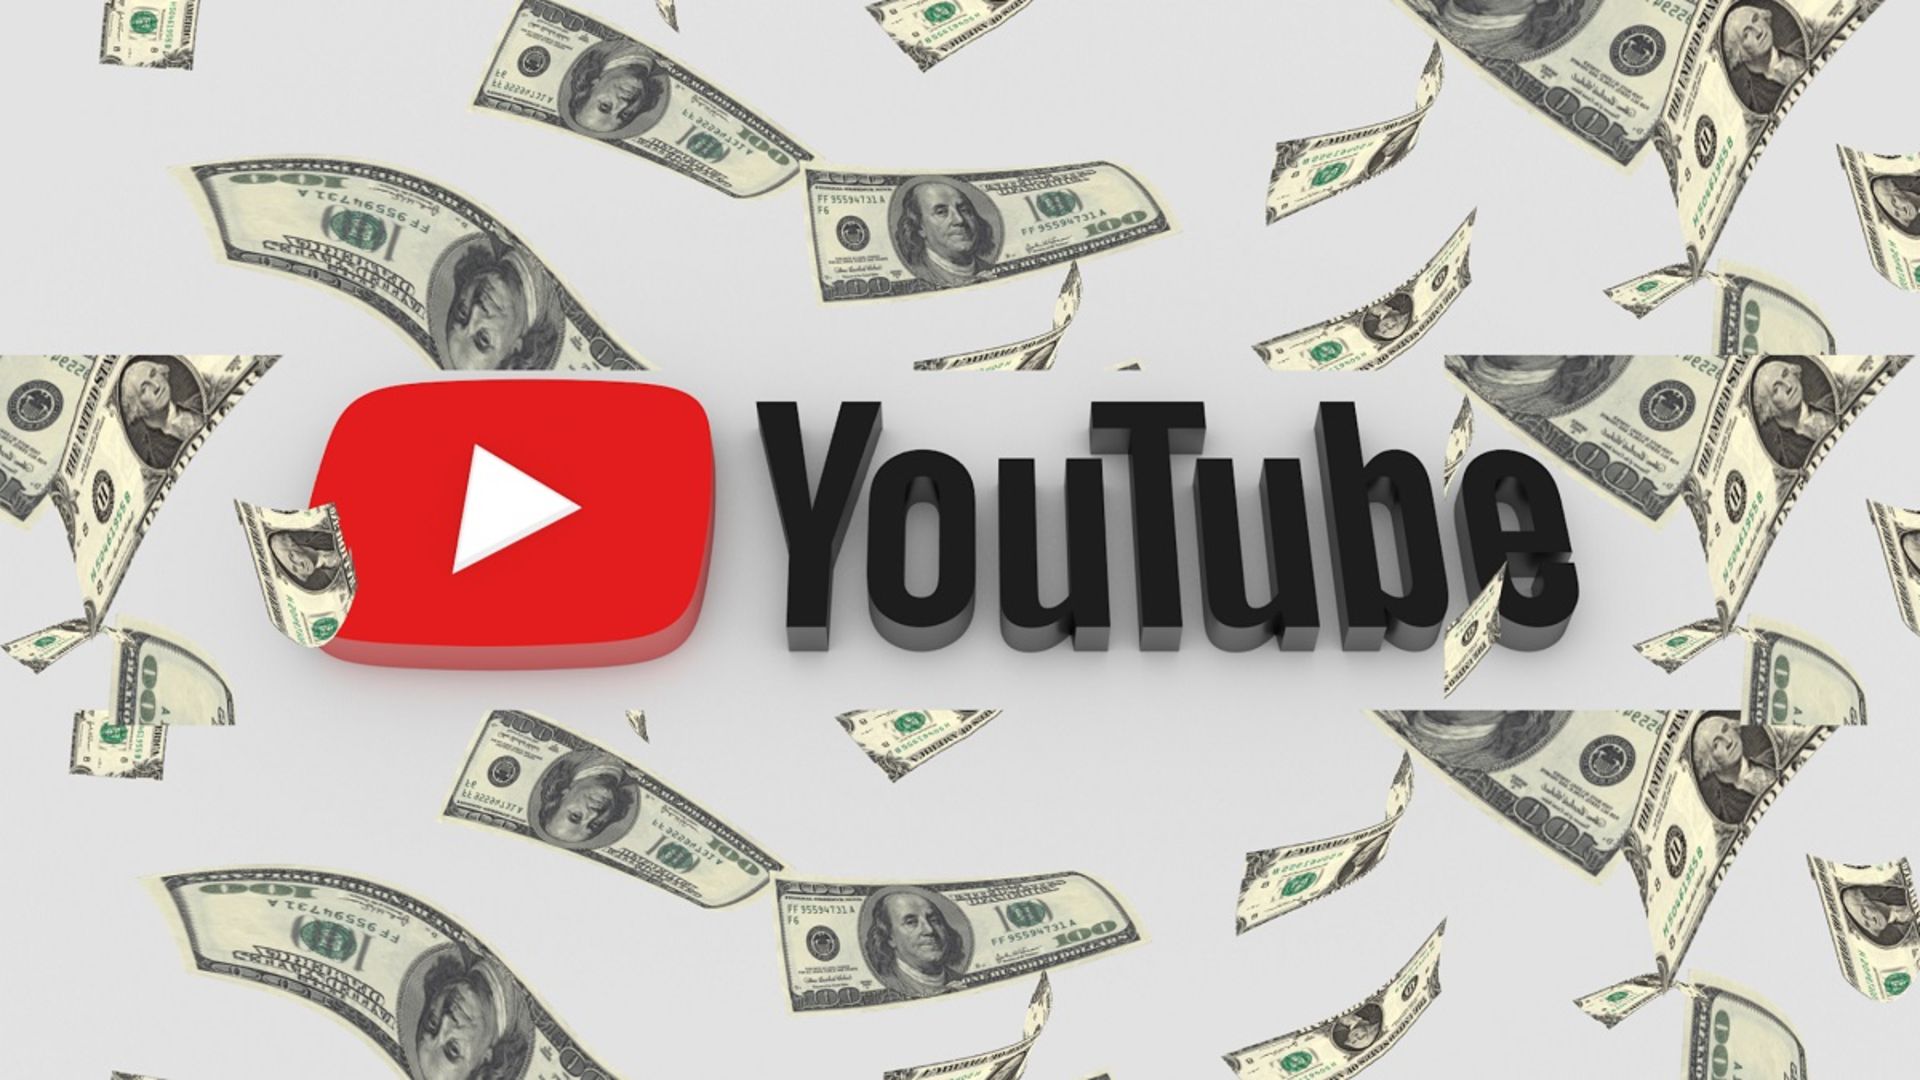 مرجع متخصصين ايران درآمد دلاري از يوتيوب